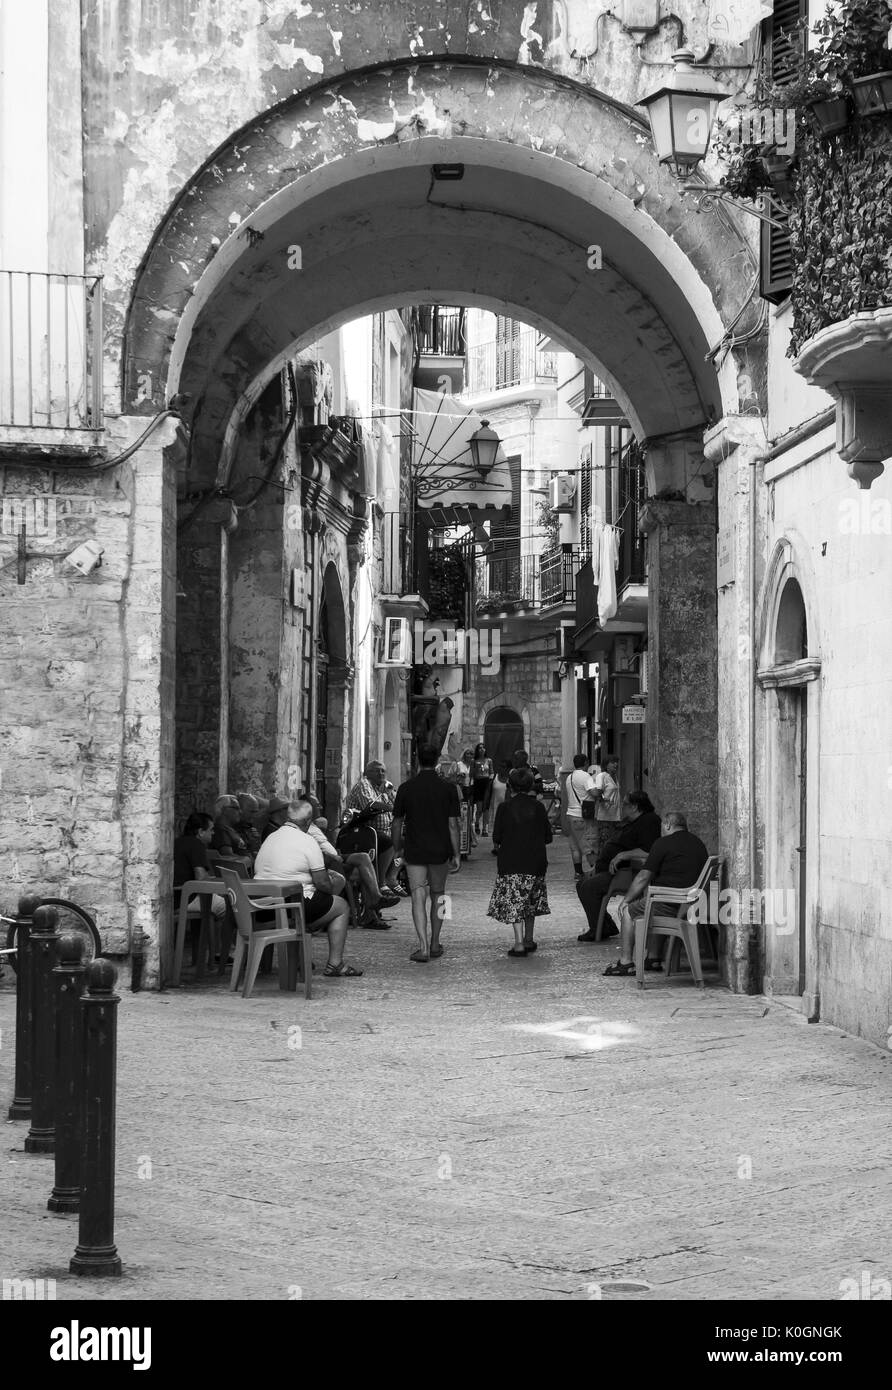 Bari, Italia - la capitale della regione Puglia, una grande città sul mare adriatico, con il centro storico denominato Bari vecchia e il famoso lungomare Foto Stock